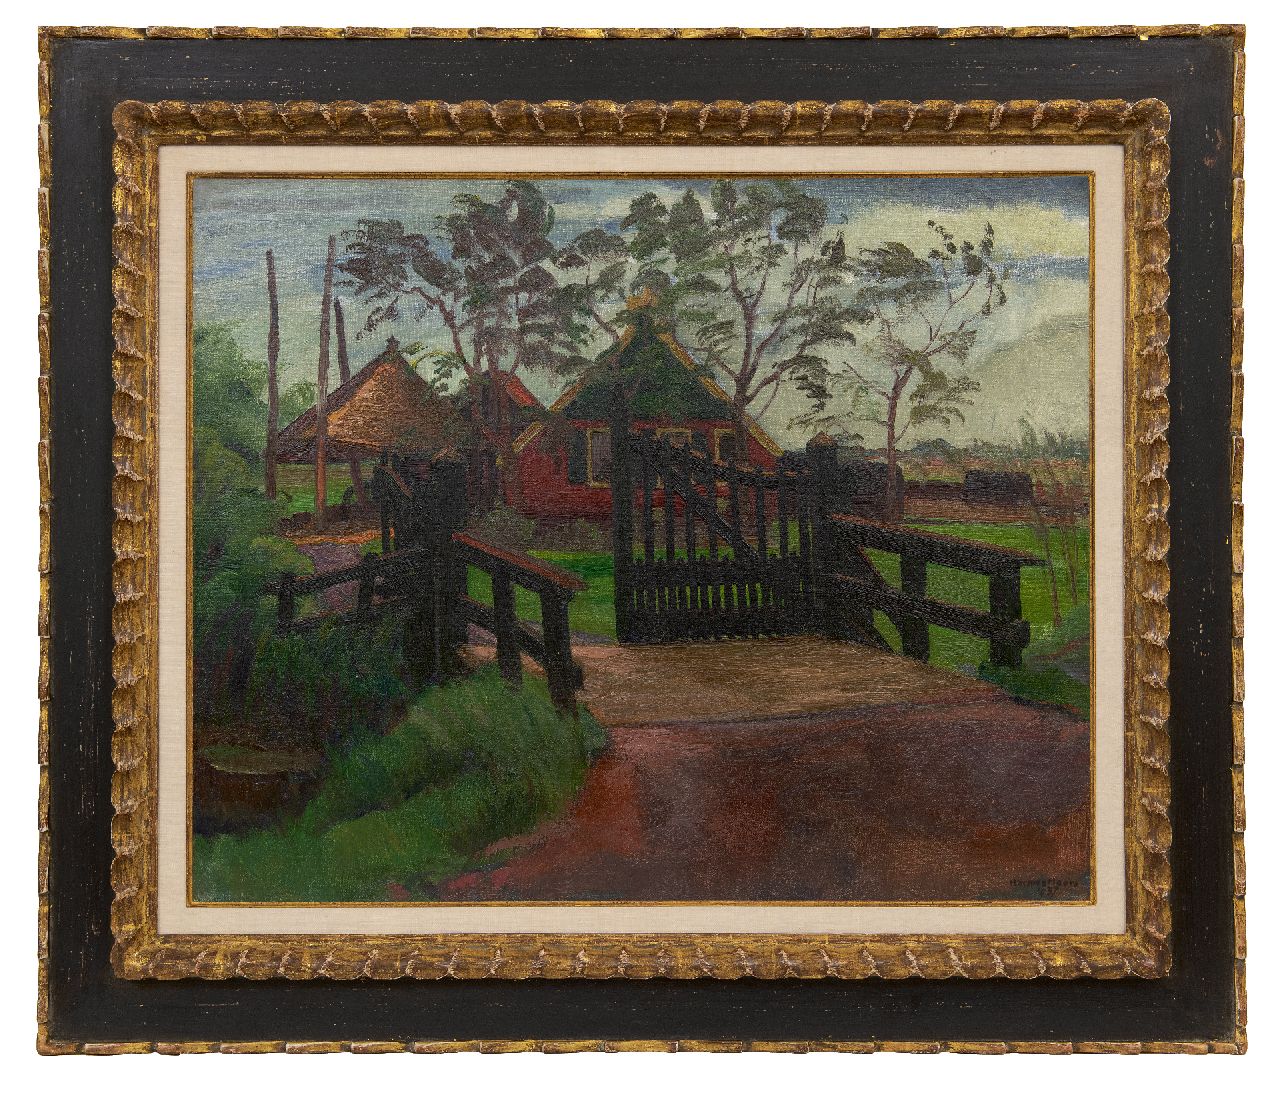 Meurs H.H.  | 'Harmen' Hermanus Meurs | Gemälde zum Verkauf angeboten | Bauernhof in Polderlandschaft, Öl auf Leinwand 59,9 x 73,3 cm, Unterzeichnet u.r. und datiert 1937